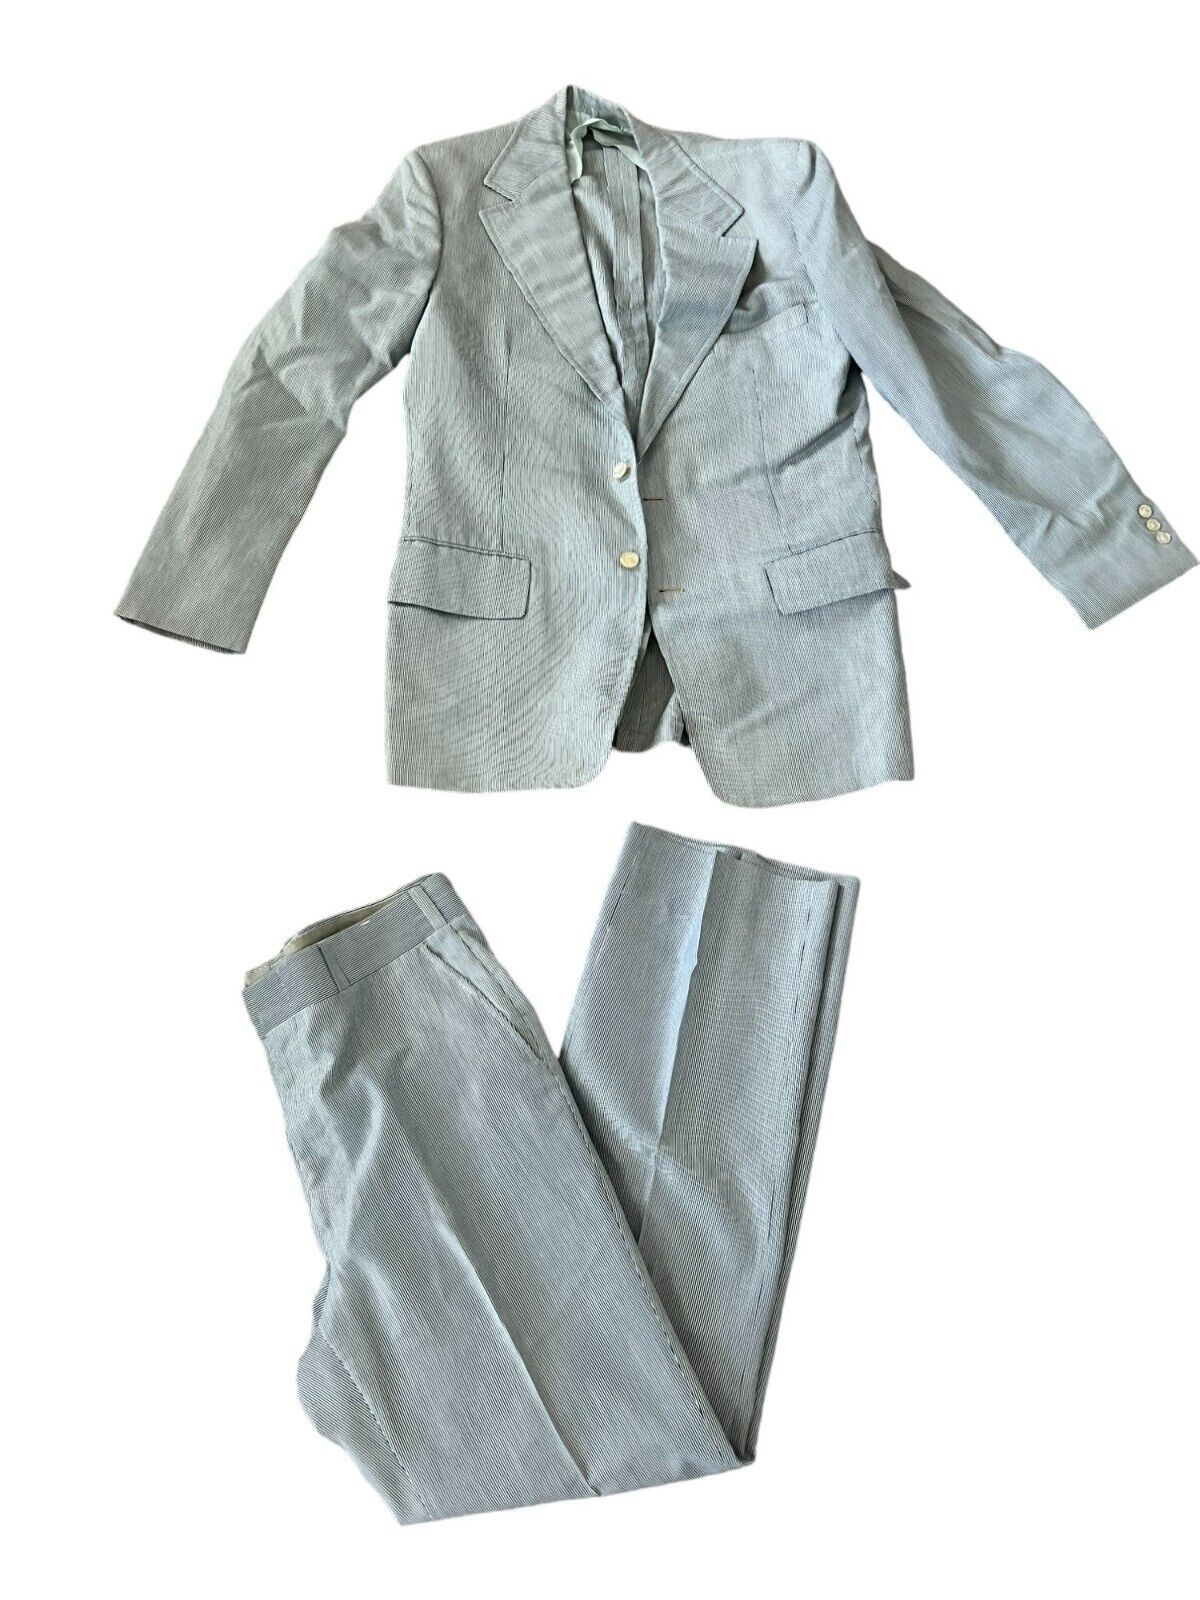 Haspel Seersucker Mens Suit 42R 37X33 Gray Vintage Business 2 Piece Set